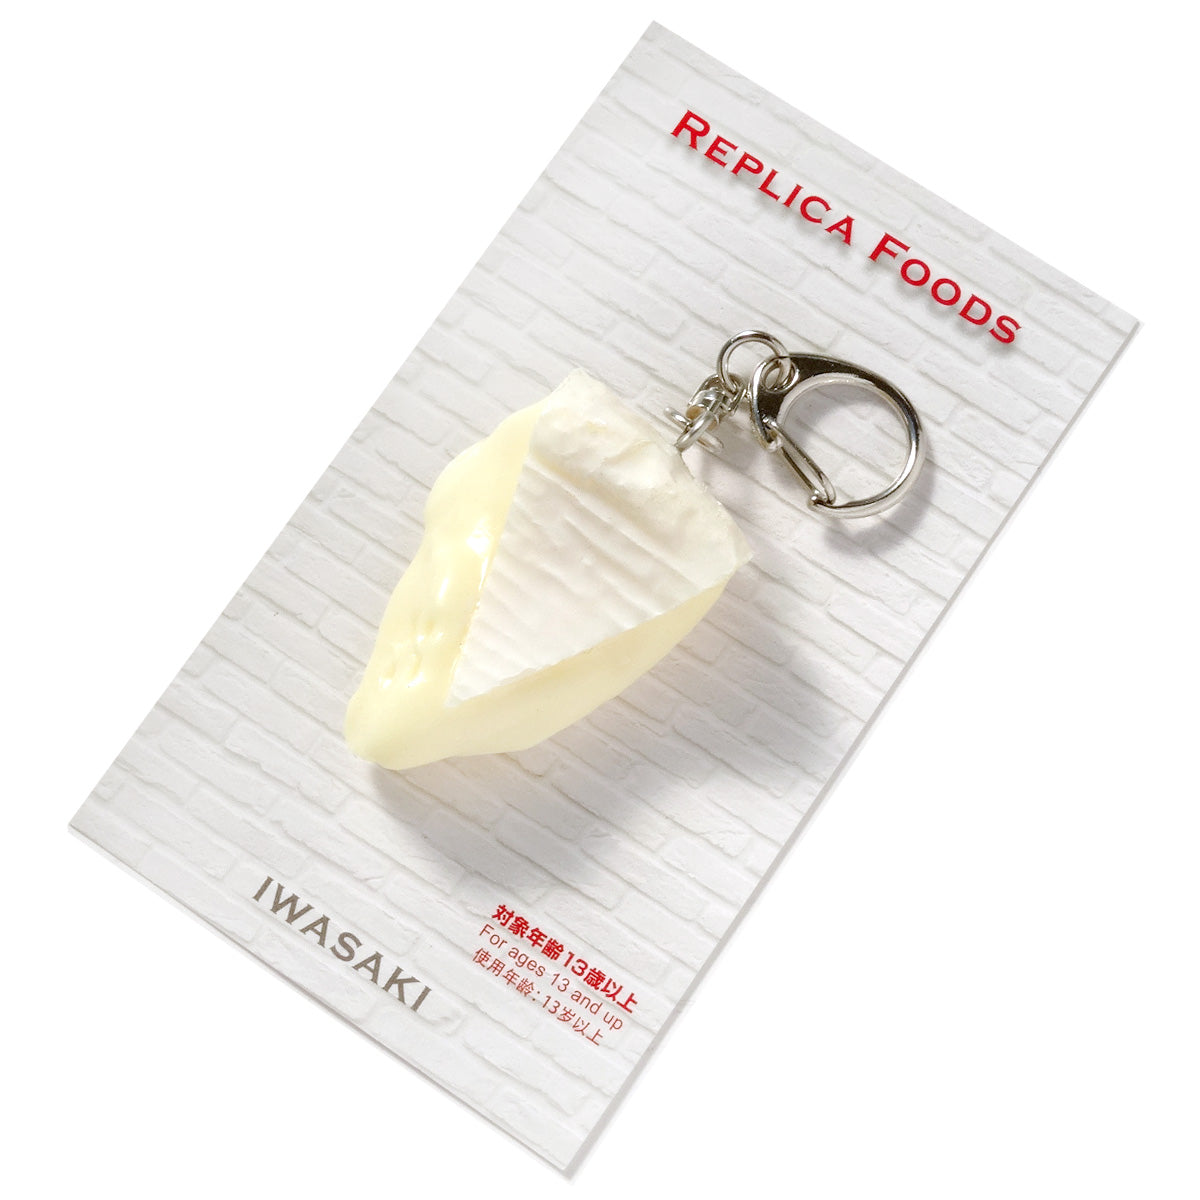 食品サンプル(IWASAKI)「カマンベールチーズのキーリング 」の商品パッケージ画像です。